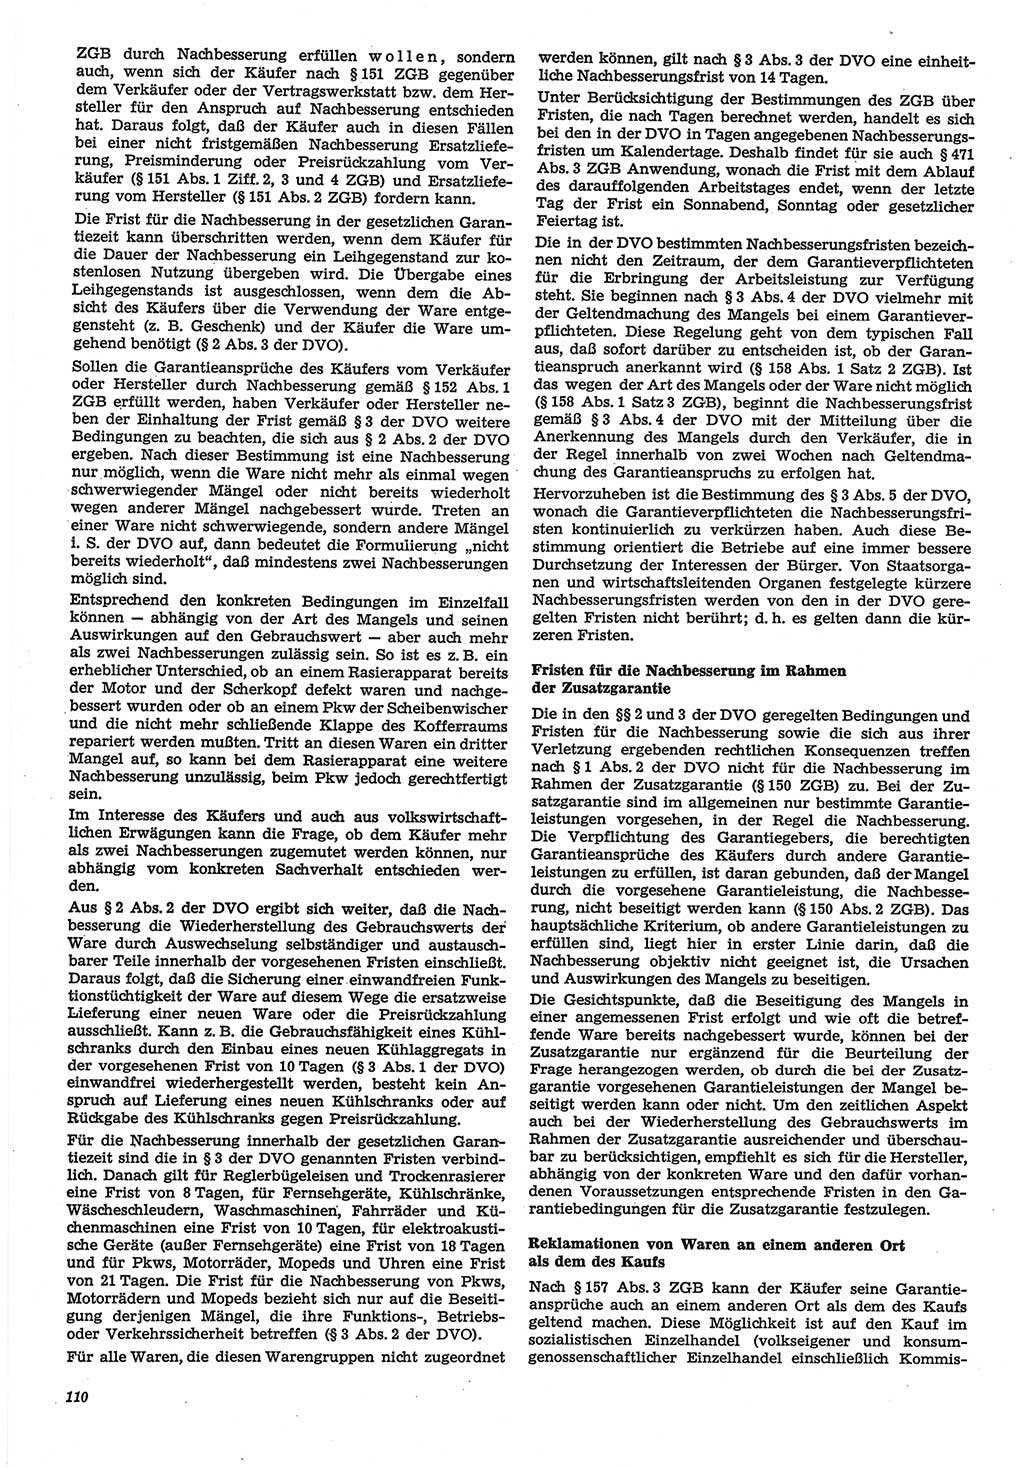 Neue Justiz (NJ), Zeitschrift für Recht und Rechtswissenschaft-Zeitschrift, sozialistisches Recht und Gesetzlichkeit, 31. Jahrgang 1977, Seite 110 (NJ DDR 1977, S. 110)